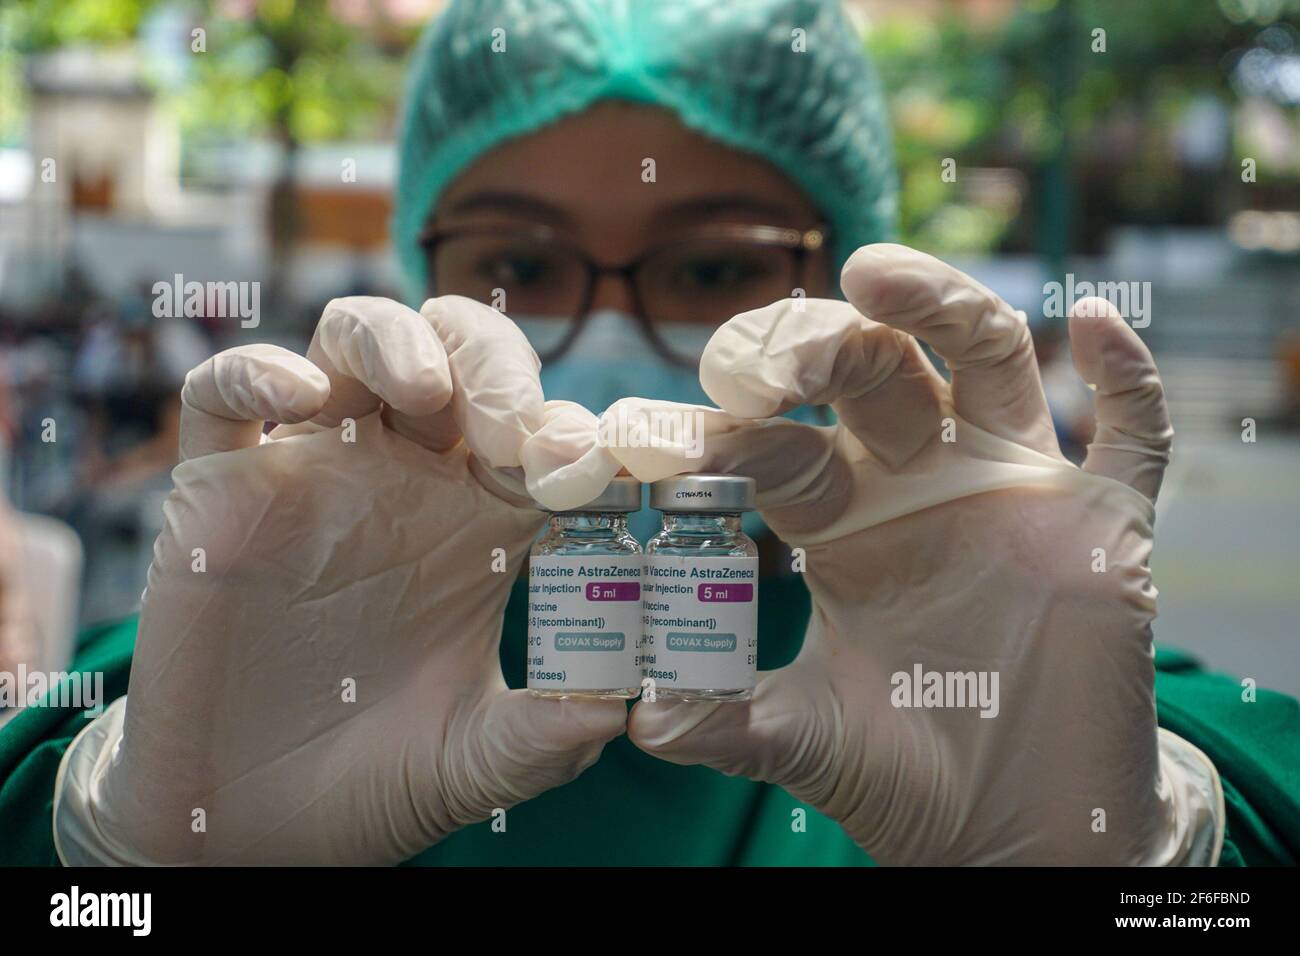 Un operatore sanitario ha visto fiale di contenimento del vaccino AstraZeneca. Vaccinazione di massa del vaccino AstraZeneca Covid-19, detenuto nella regione di Sanur, come fase del programma della zona verde a Bali. Il programma della zona verde, che coinvolge tre regioni di Bali: Ubud, Sanur e Nusa Dua, è destinato a preparare un piano internazionale di riapertura del turismo. Foto Stock